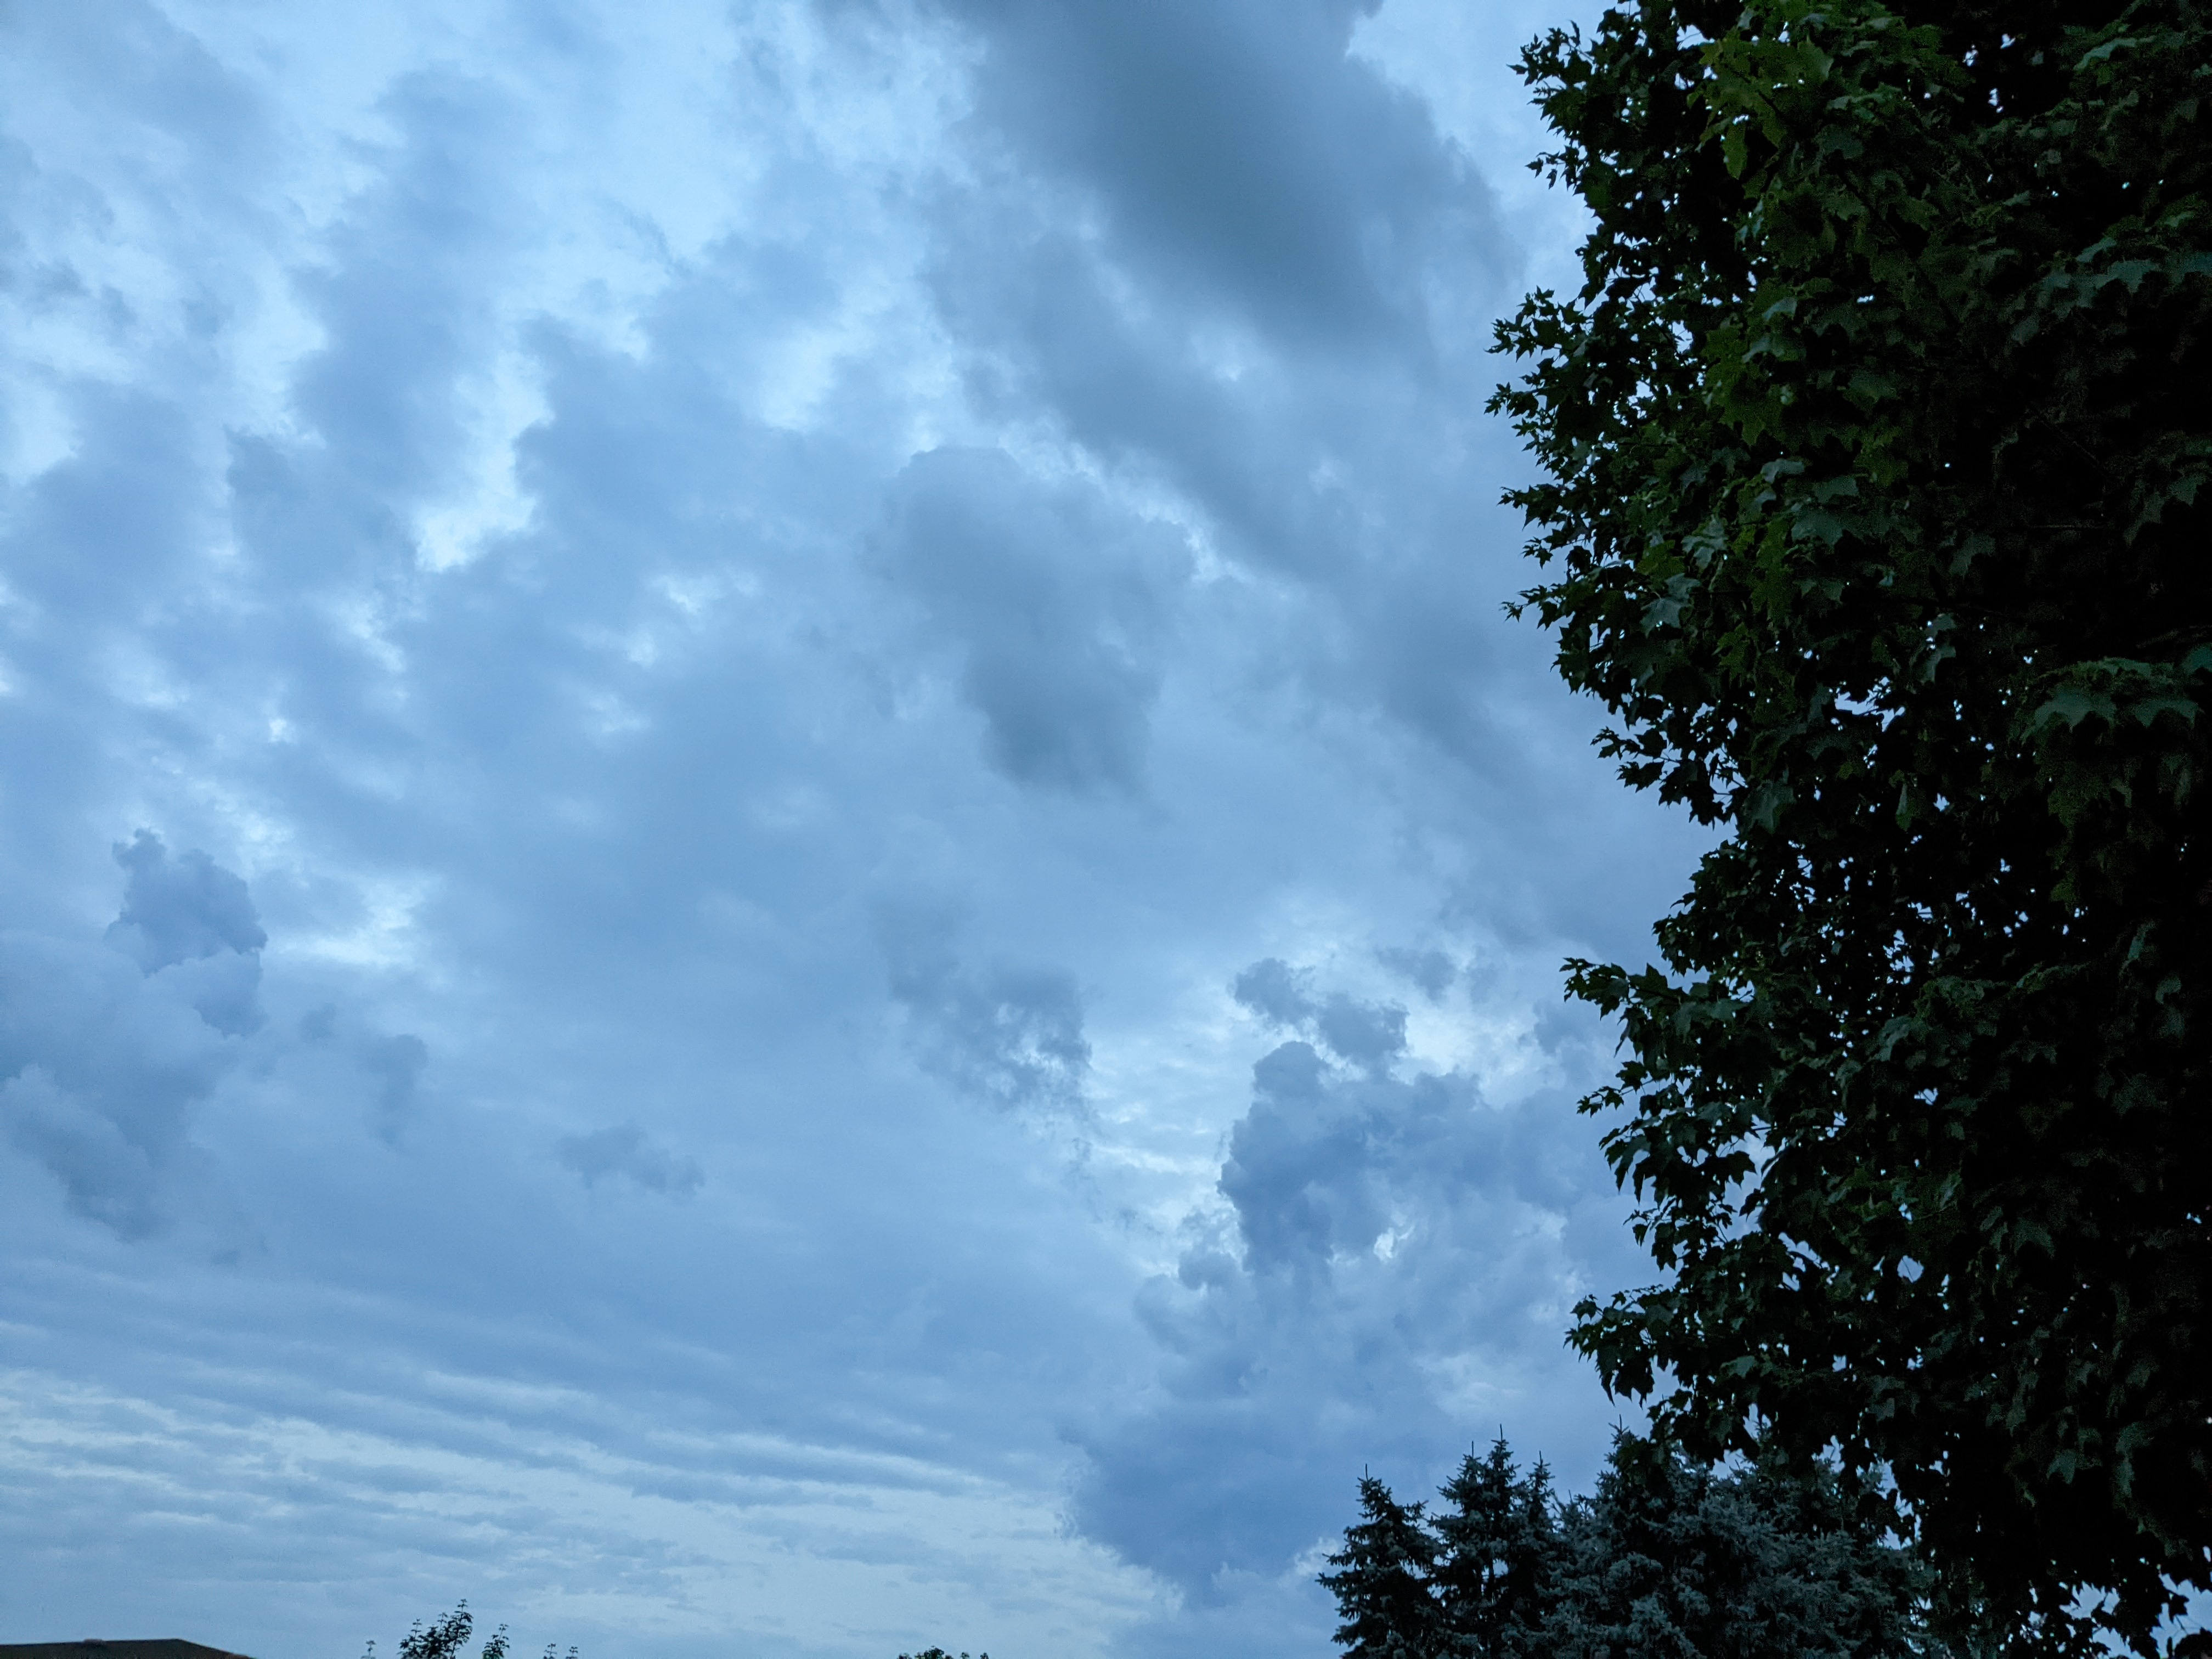 Un cielo tormentoso con nubes detalladas.  Parte de un árbol se ve en la esquina derecha.